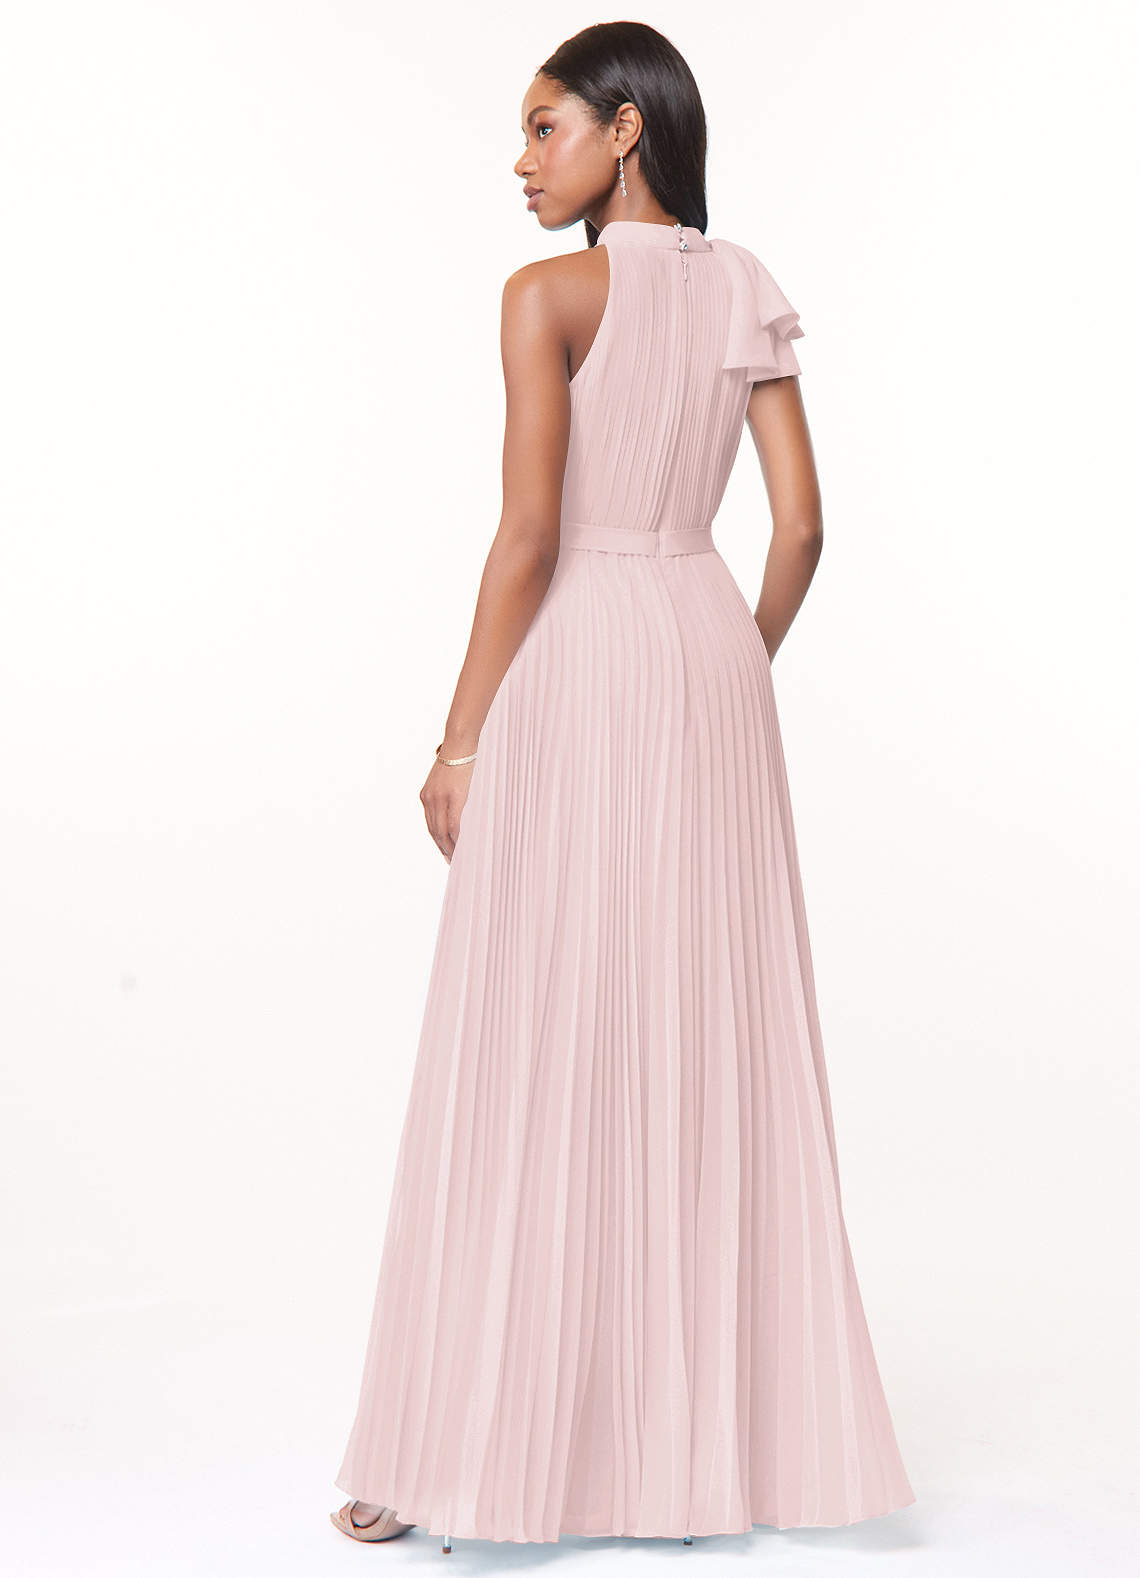 Azazie Cailyn Bridesmaid Dresses A-Line Pleated Chiffon Floor-Length Dress image1